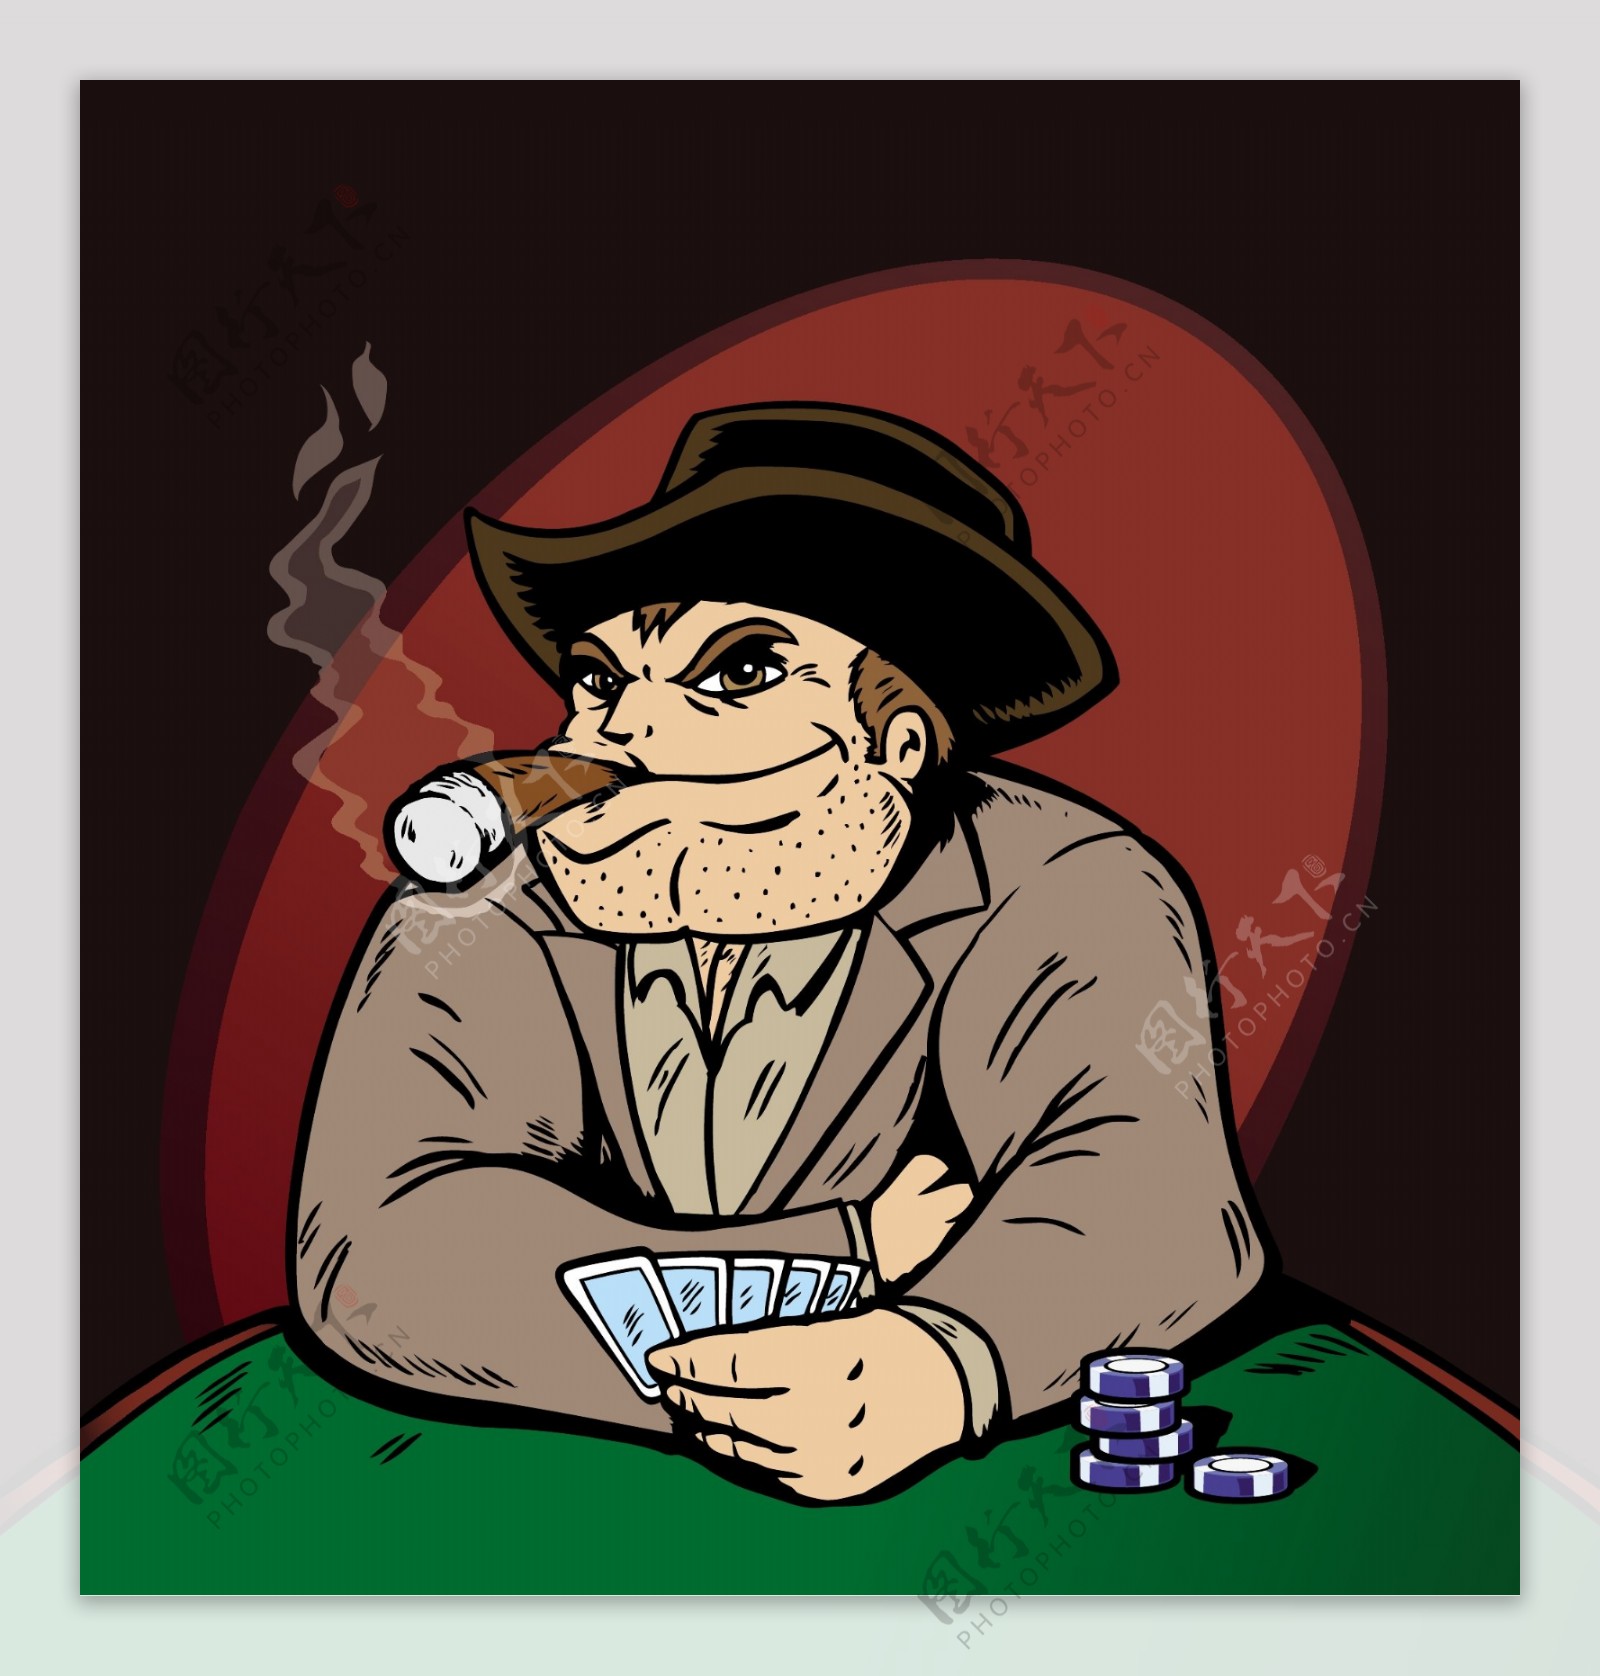 正在玩扑克的卡通人